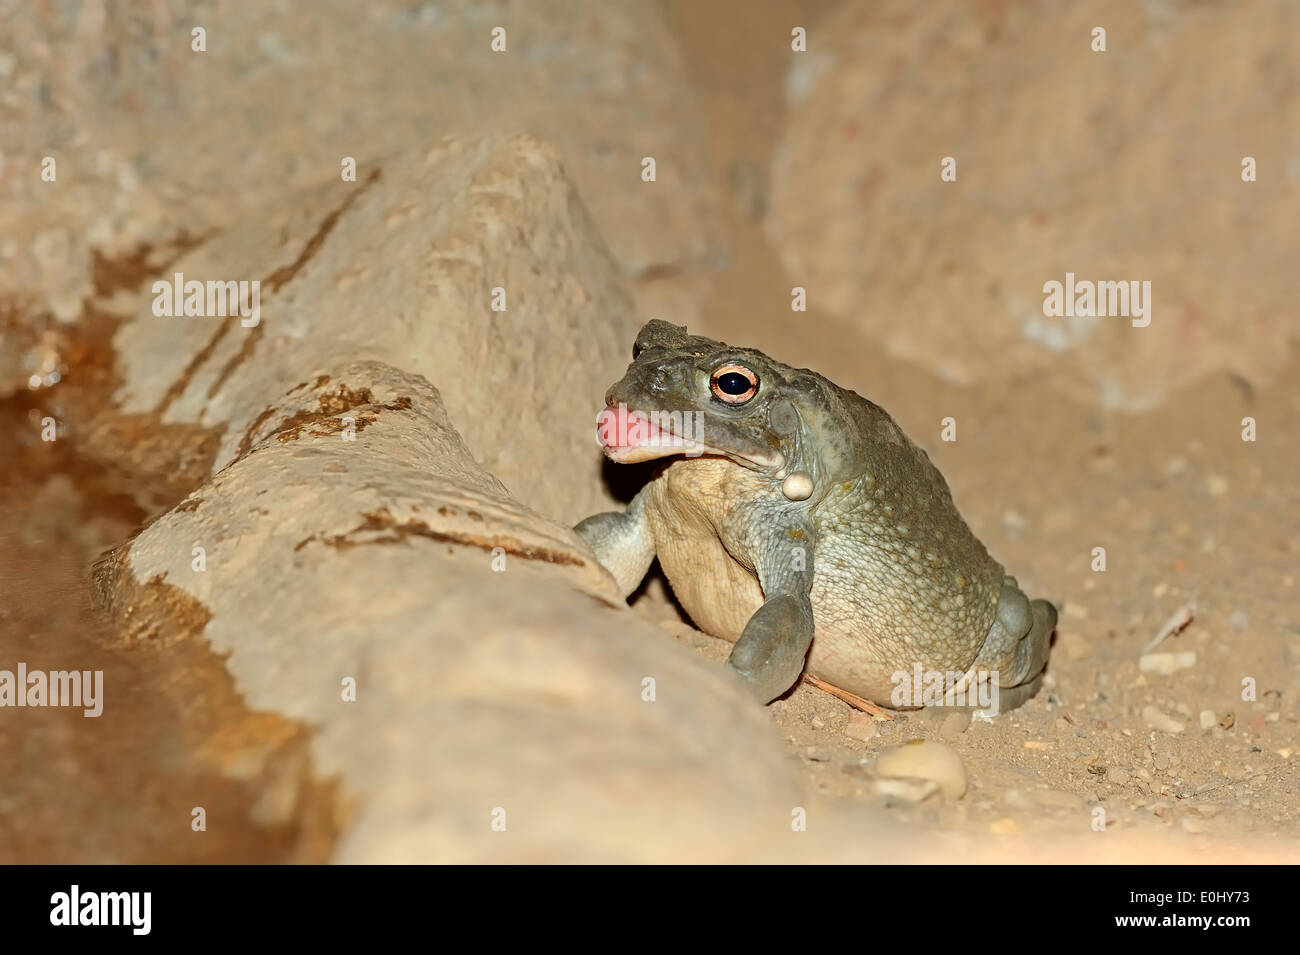 Colorado River Toad ou désert de Sonora (Bufo alvarius) Banque D'Images